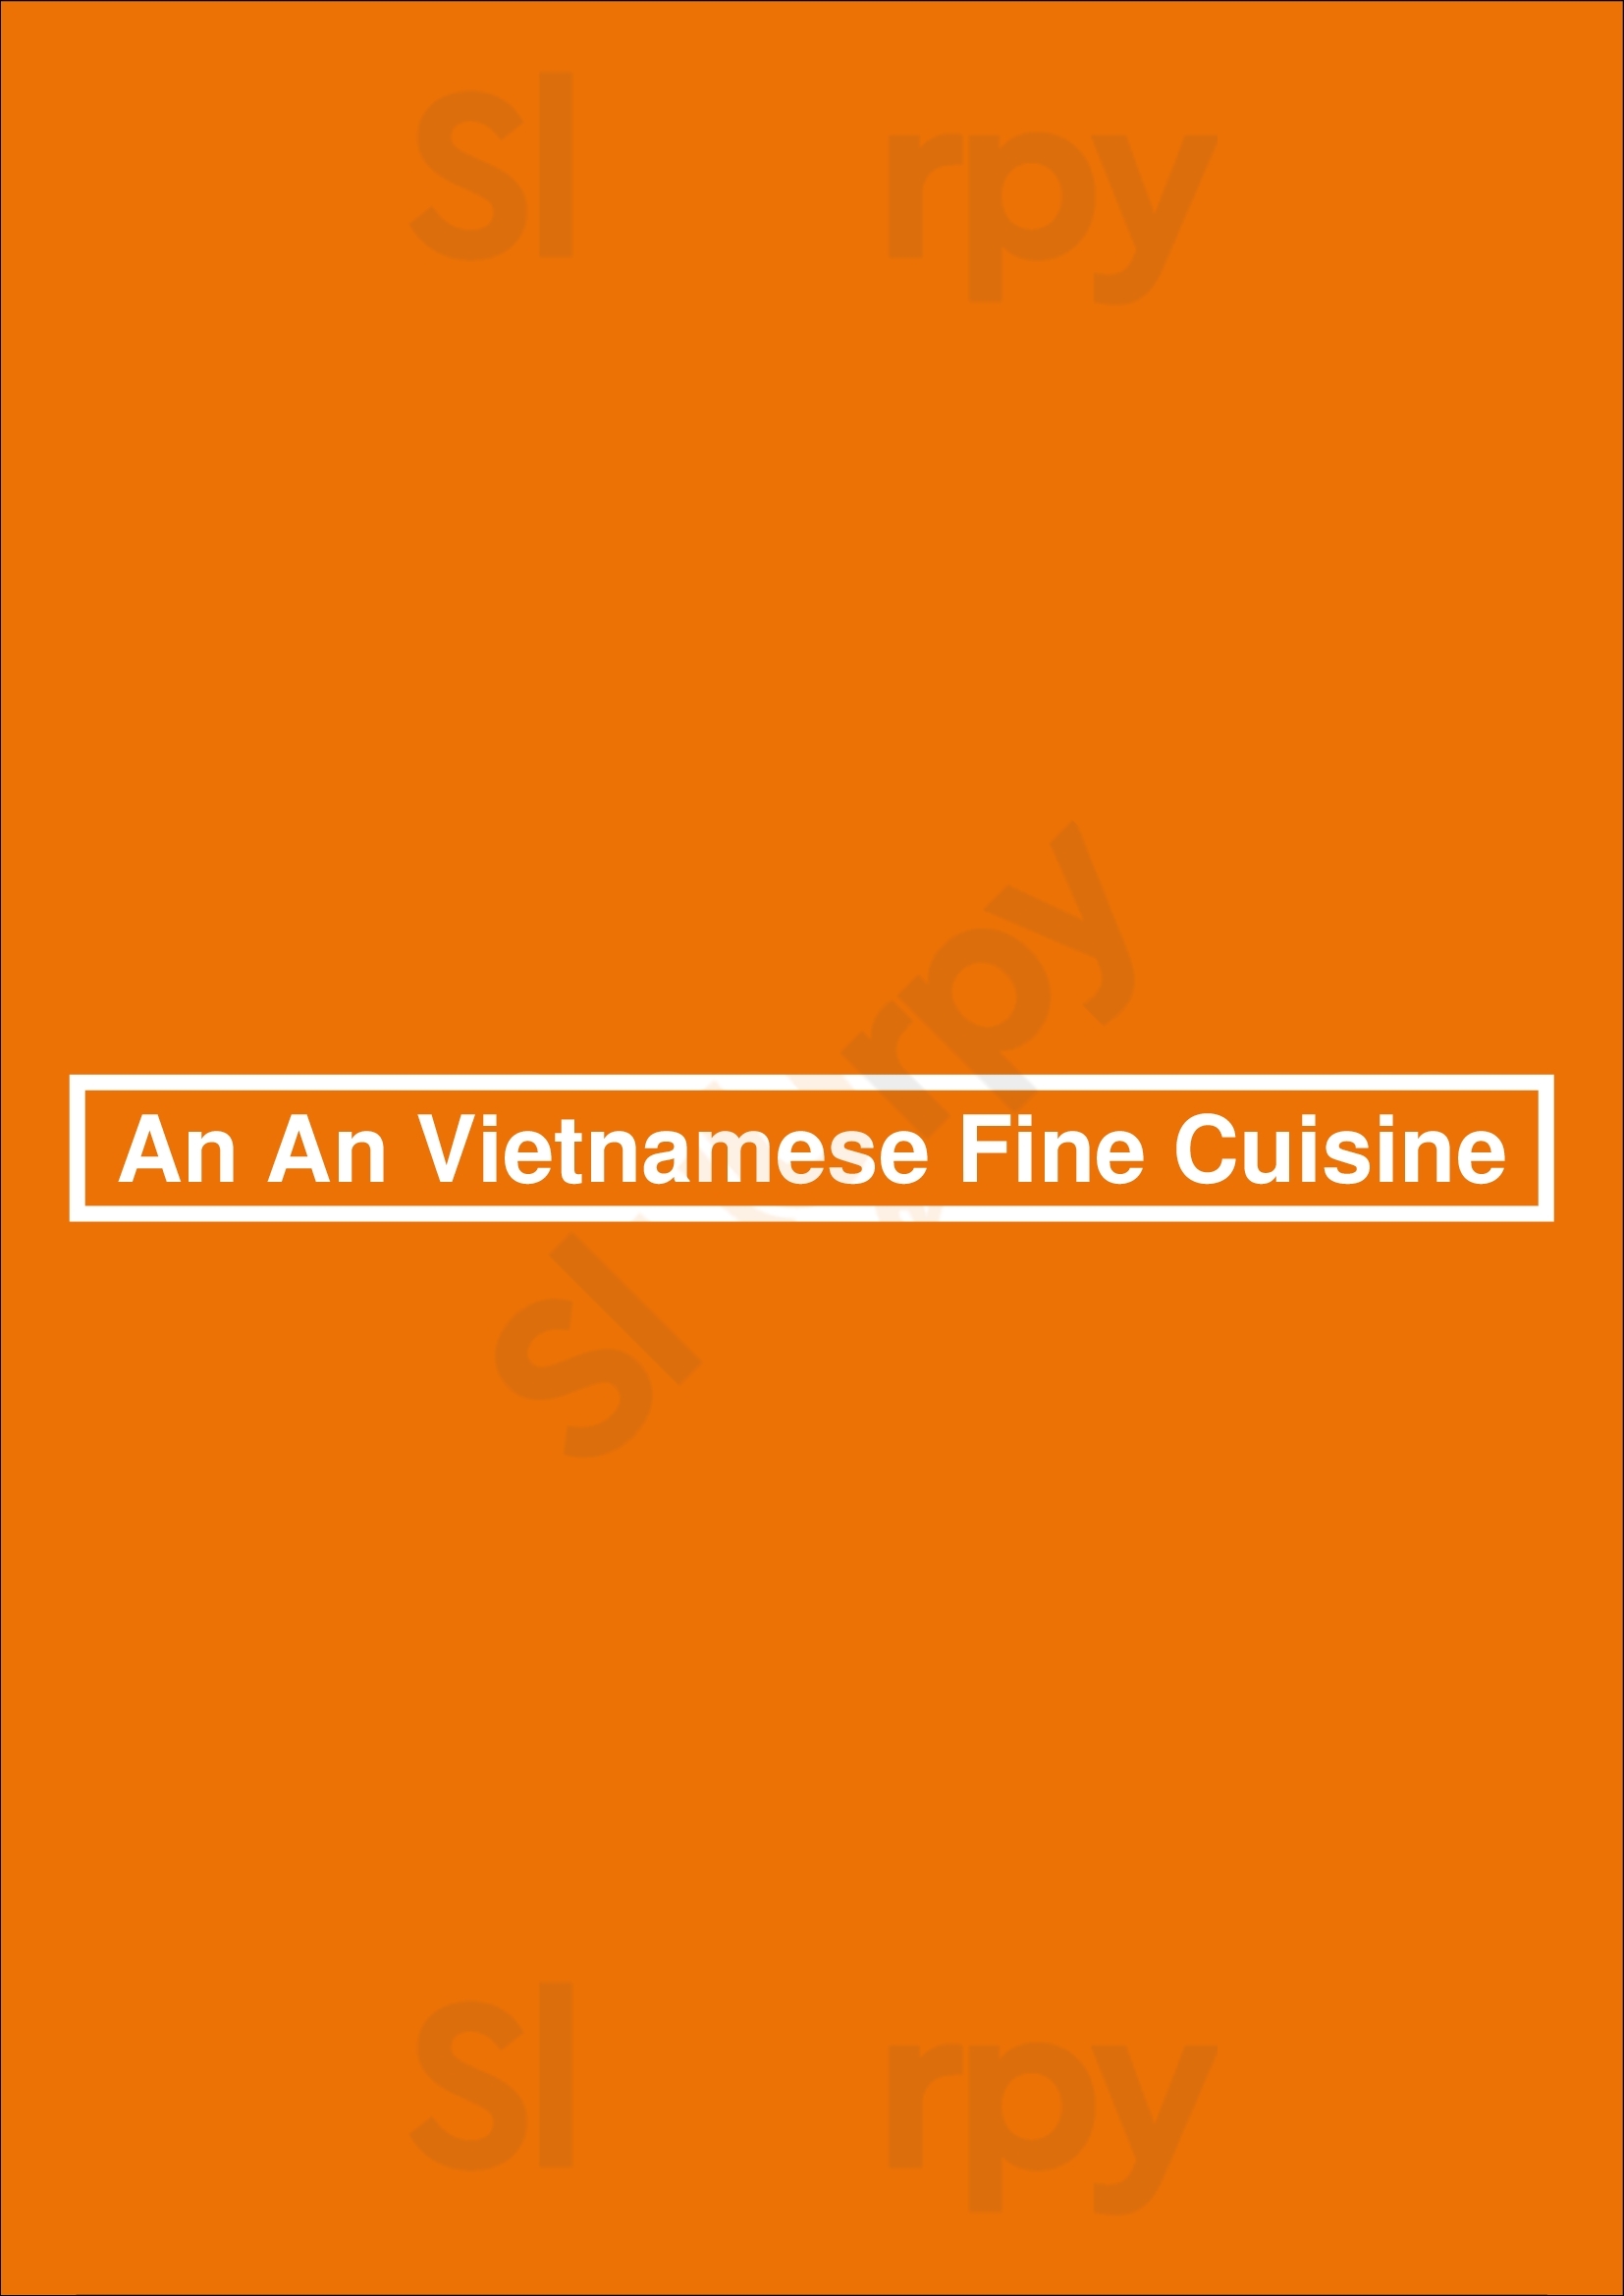 An An Vietnamese Fine Cuisine München Menu - 1